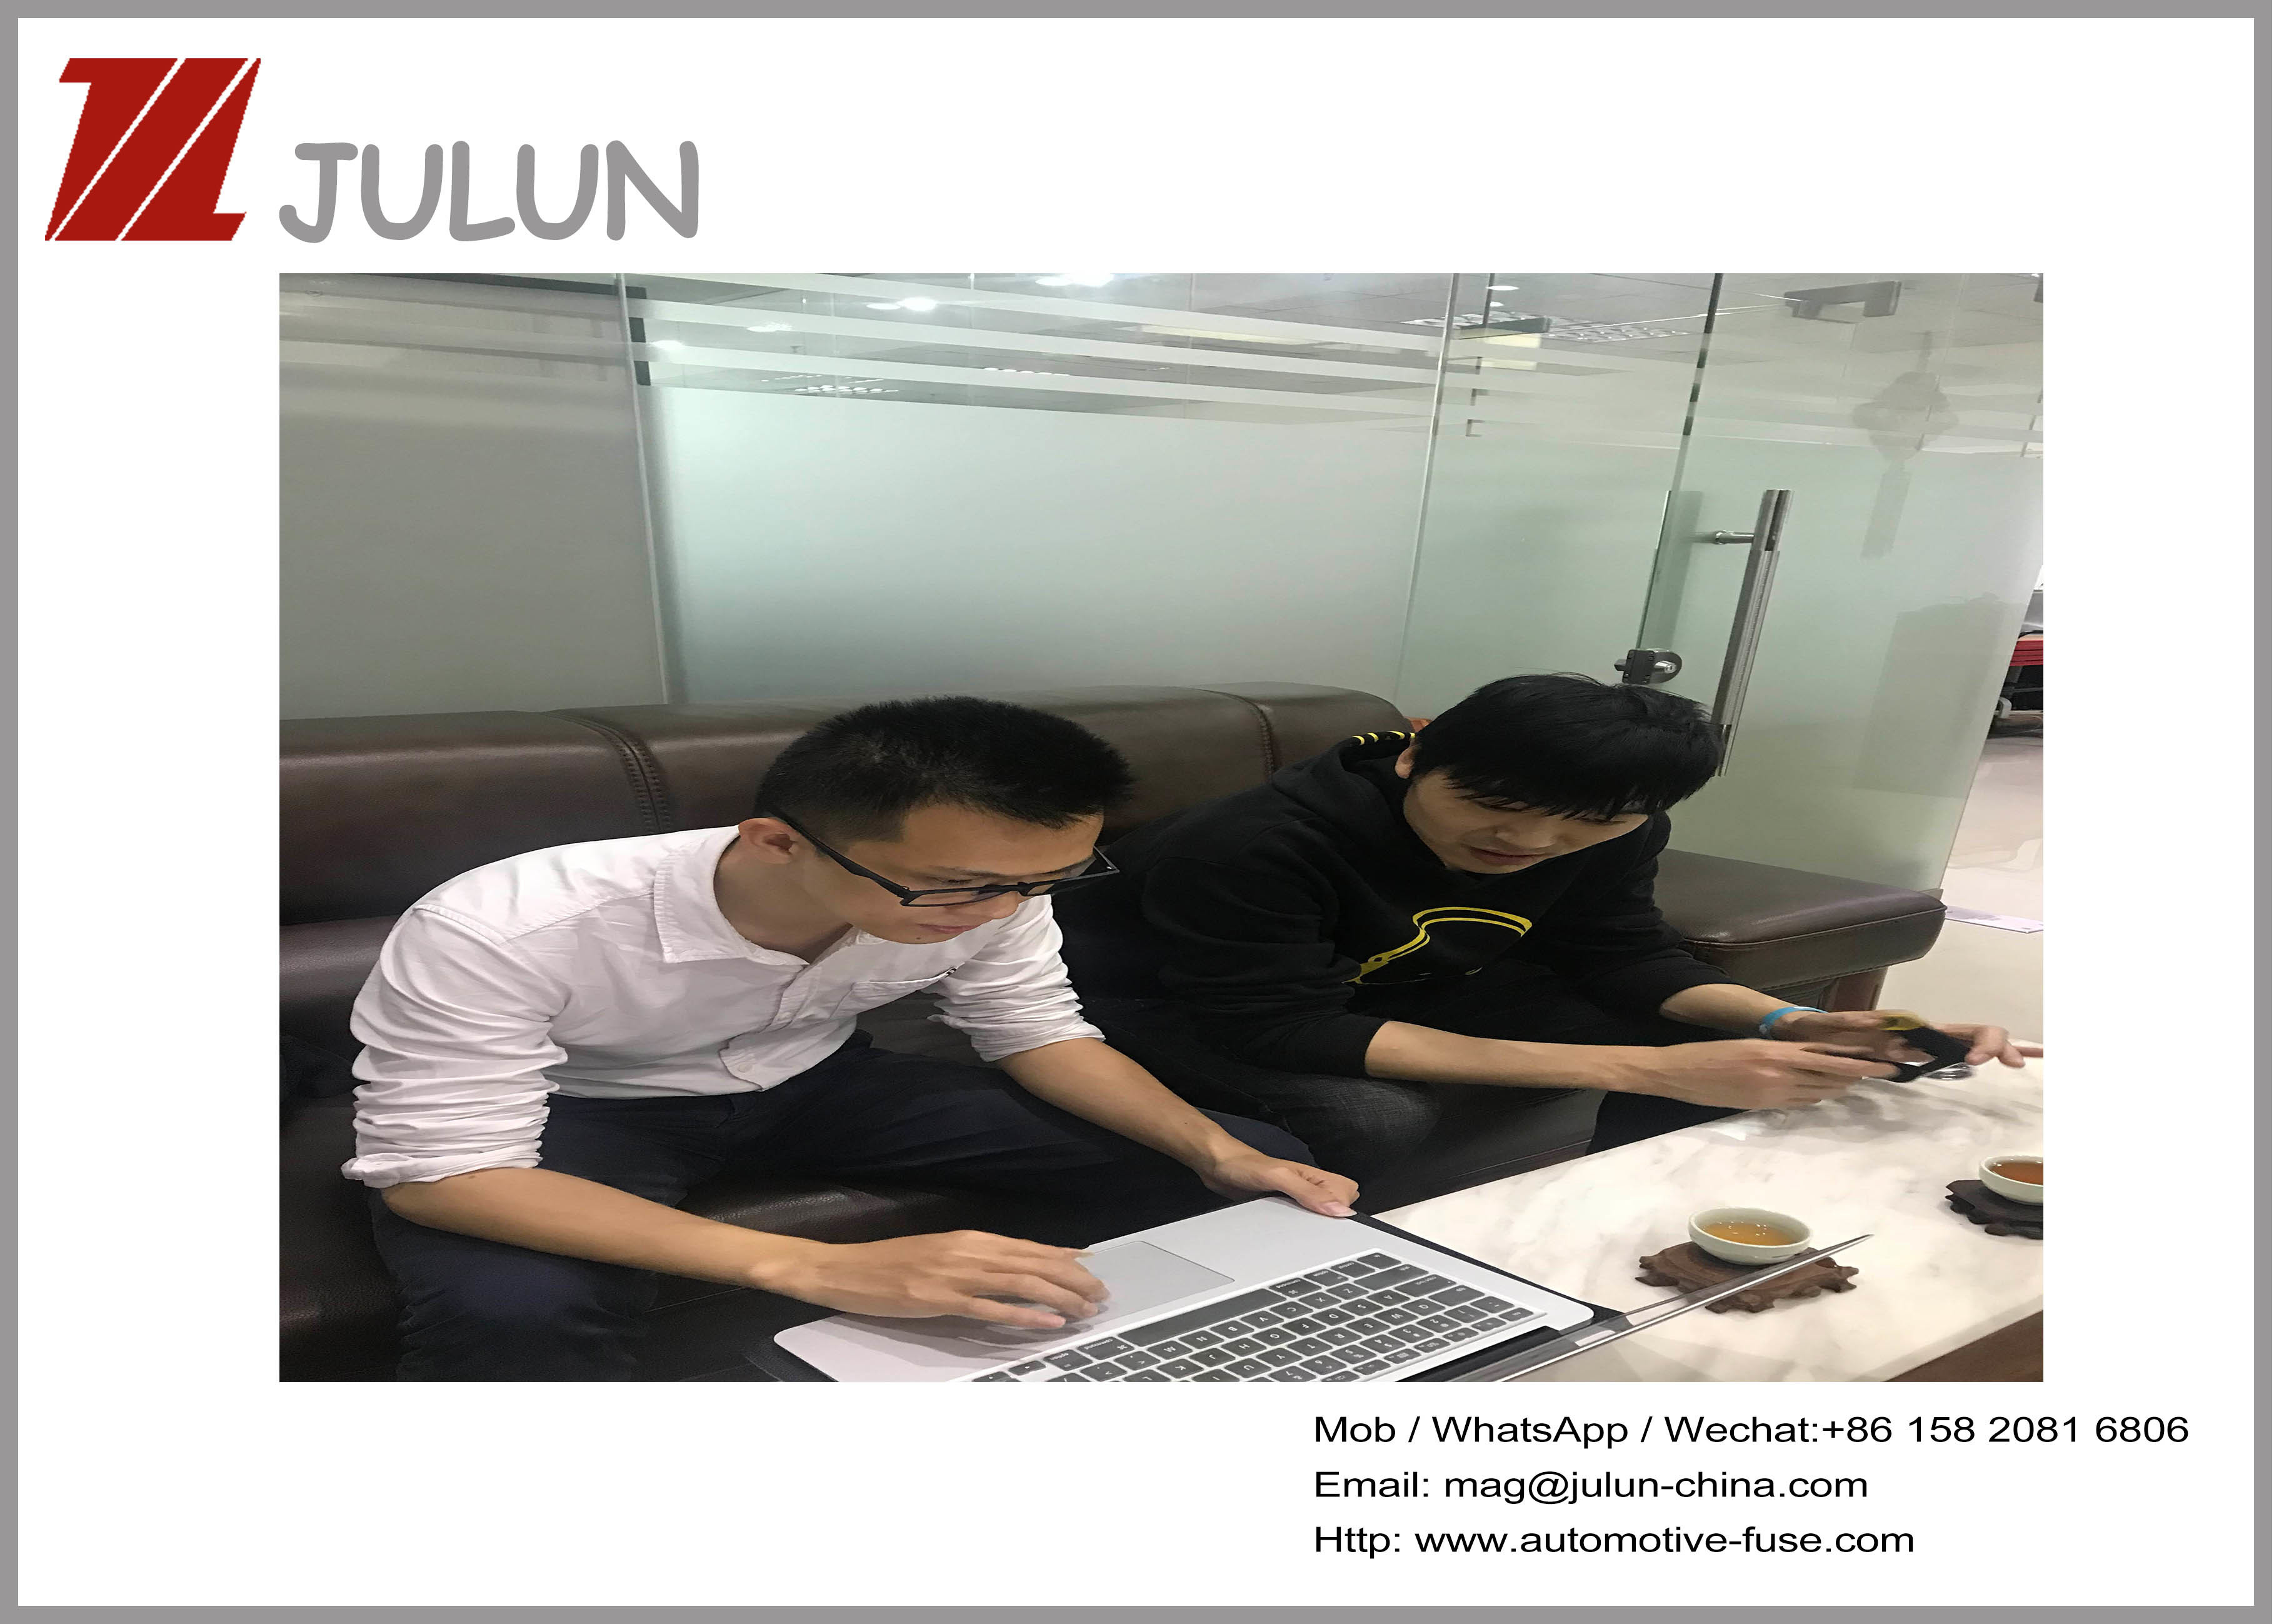 الصين JULUN (H.K)CO.,LTD (DONGGUAN JULUN ELECTRONICS CO.,LTD) ملف الشركة